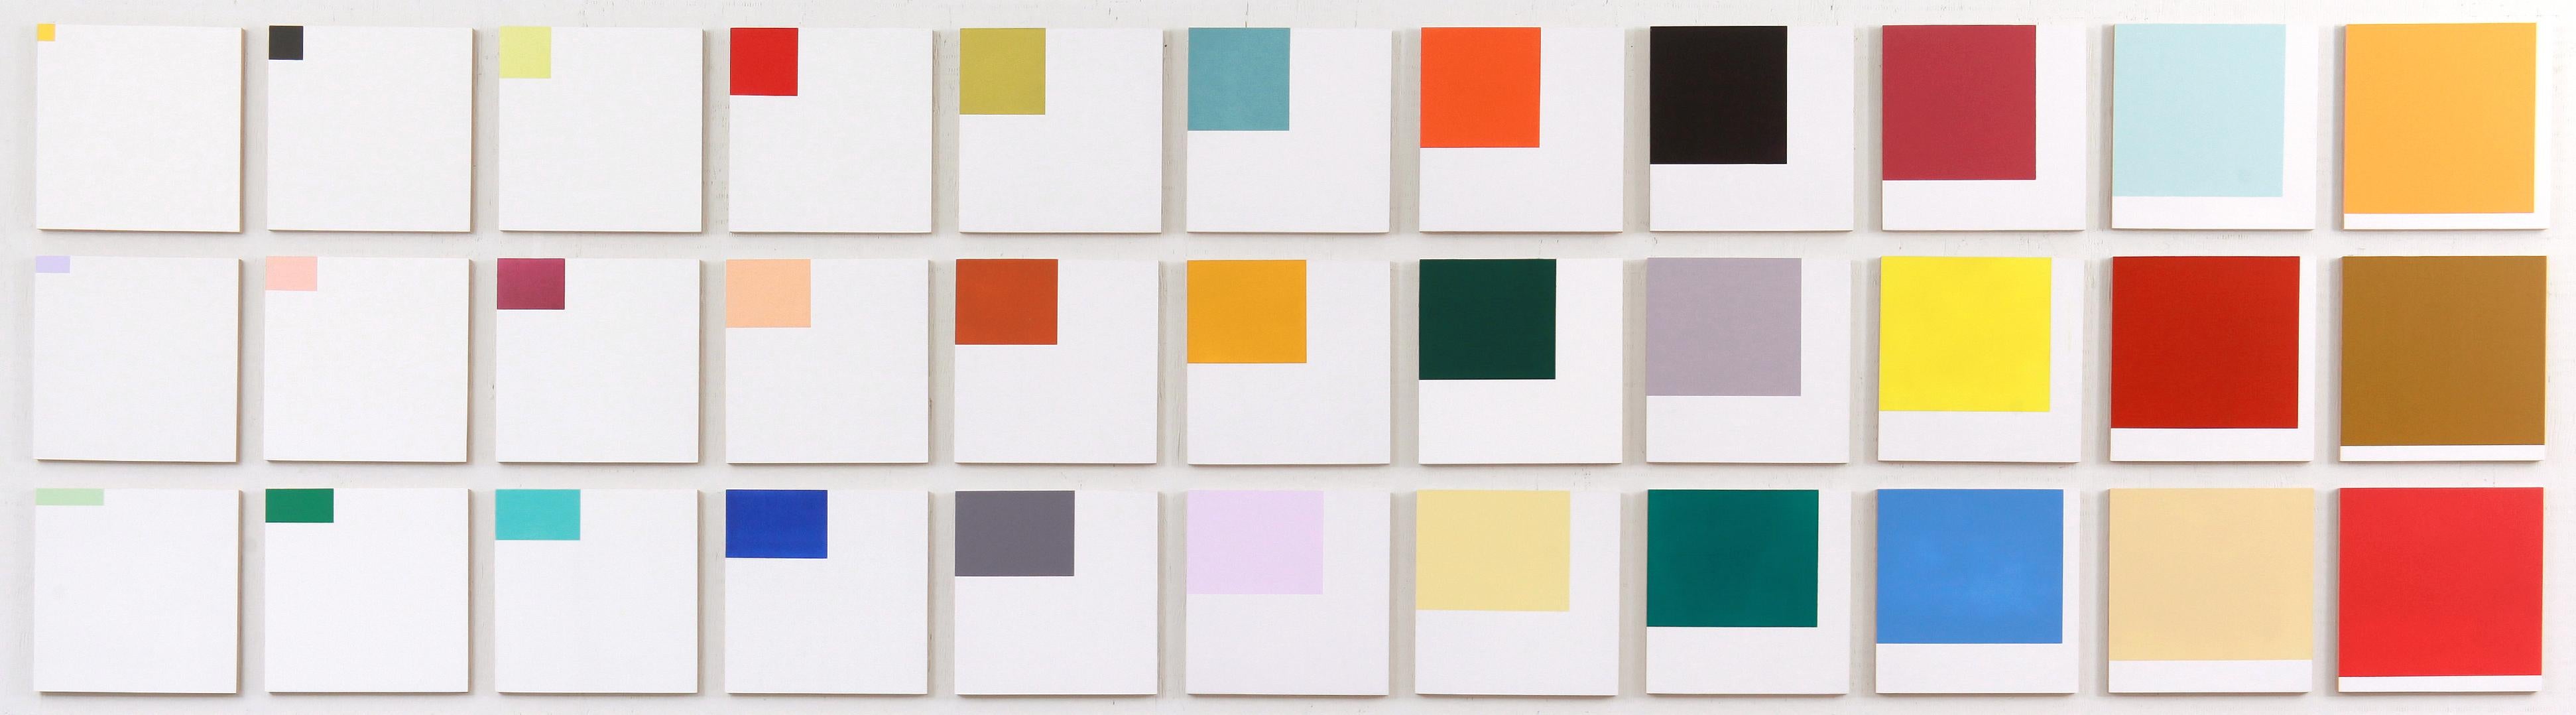 Erwähnungen – farbenfrohe, großformatige Anordnung, kleine Quadrate, Acryl auf Tafeln – Painting von Milly Ristvedt